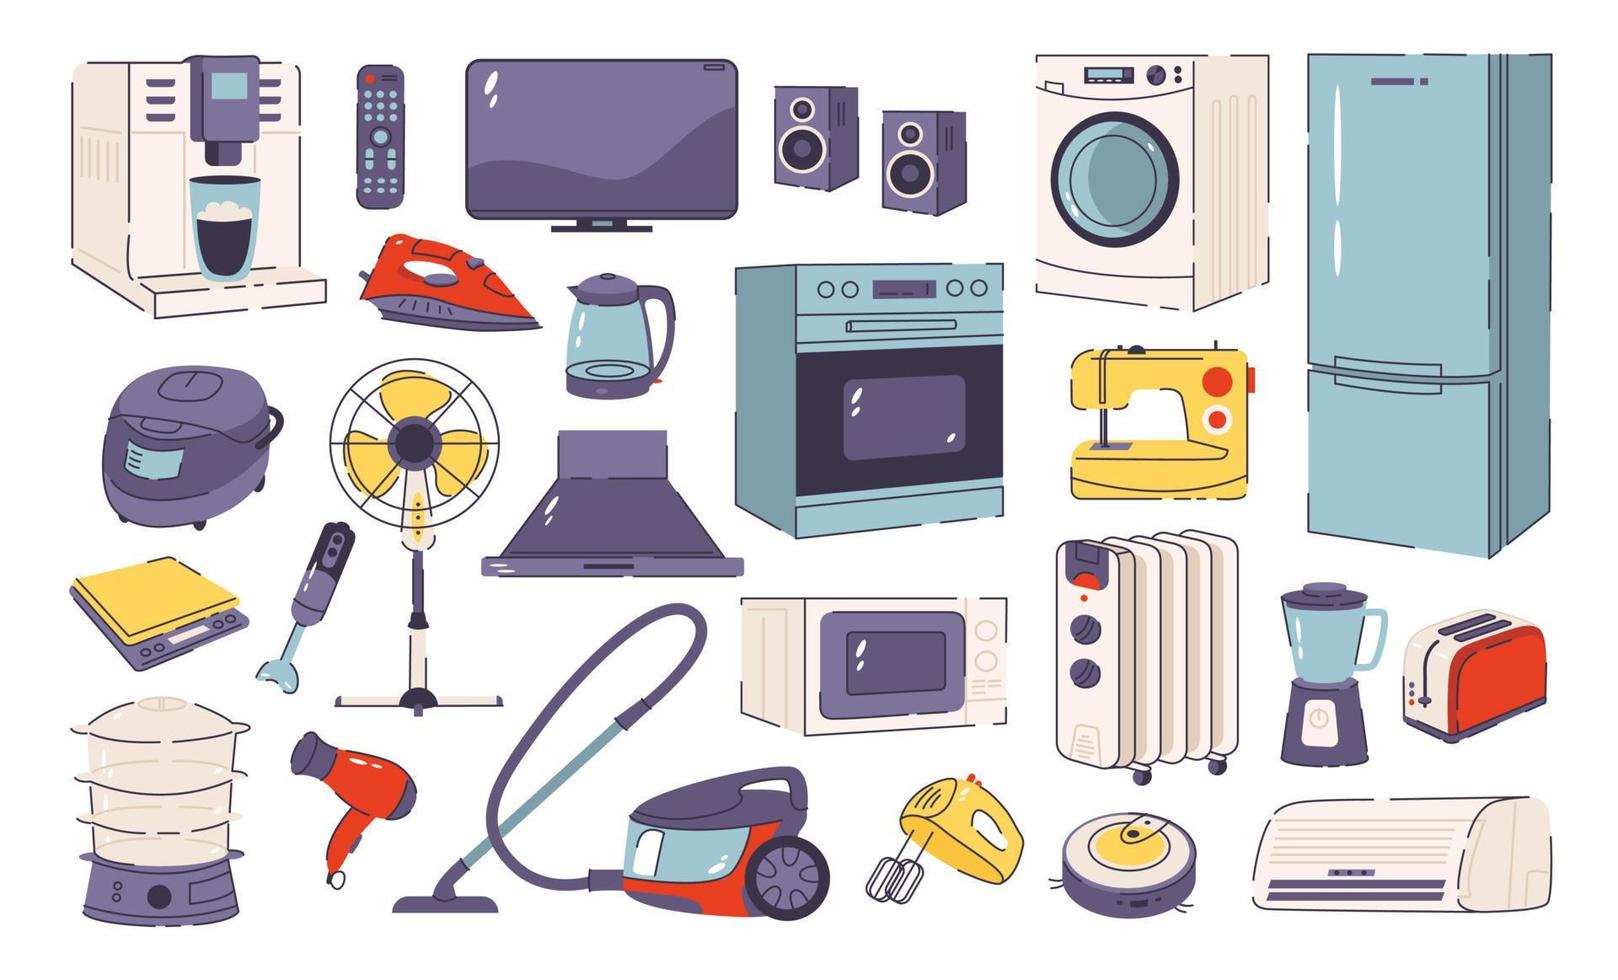 Haushalts- und Küchengeräte-Set. Mikrowelle, Waschmaschine, Staubsauger, Kaffeemaschine, Mixer, Bügeleisen usw. flacher Vektorstil vektor